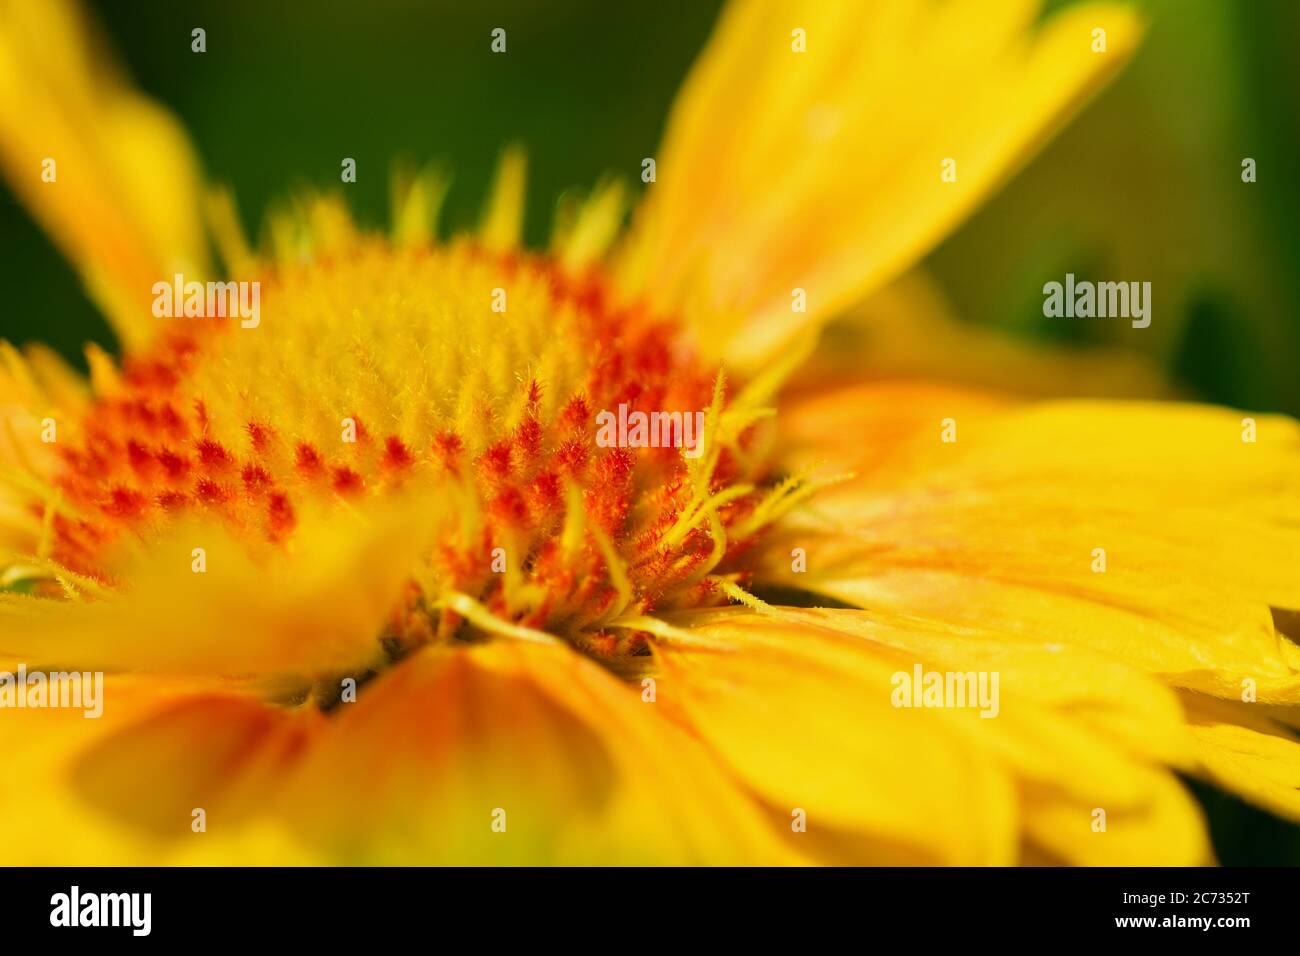 Close-up photo of flowering Gaillardia Arisona Sun (Gaillardia arizonica) with vivid red and yellow flowers. Stock Photo